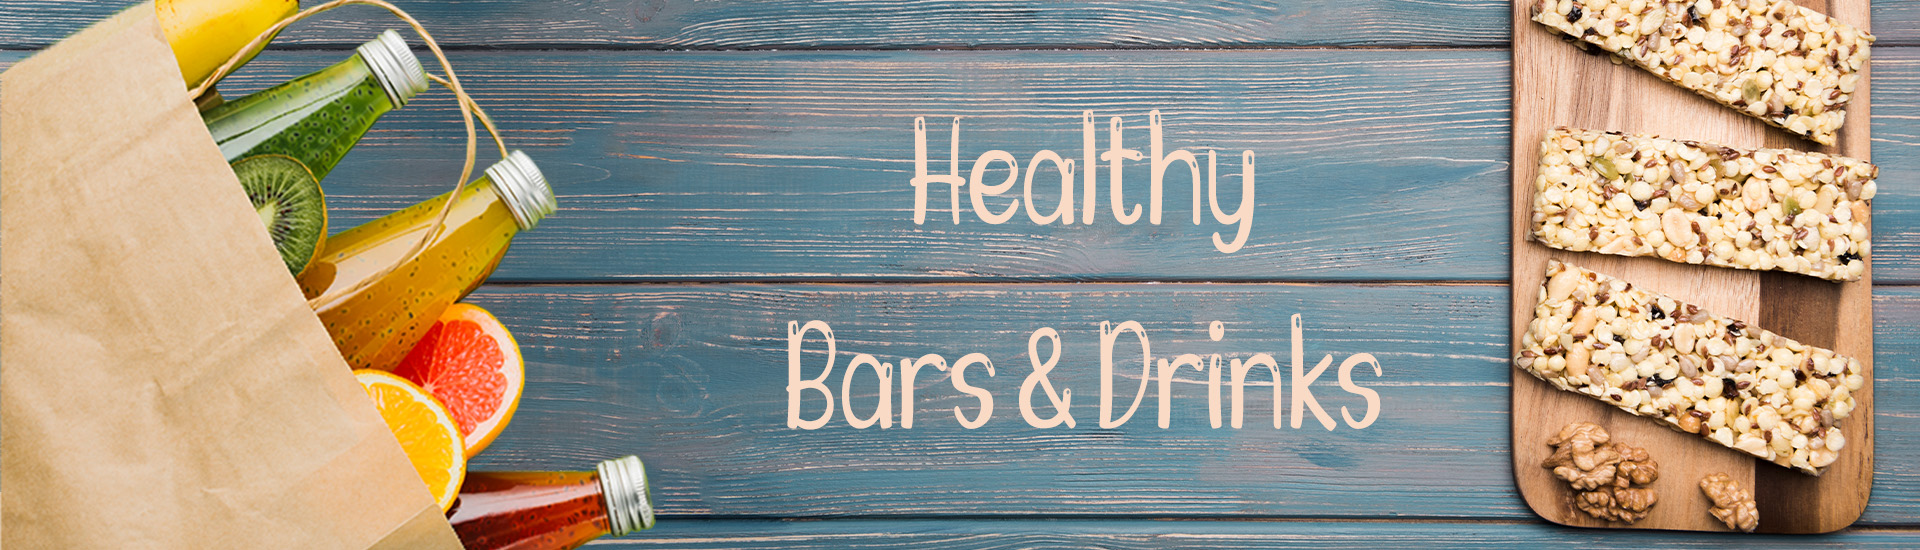 Vegan & Healthy Bars